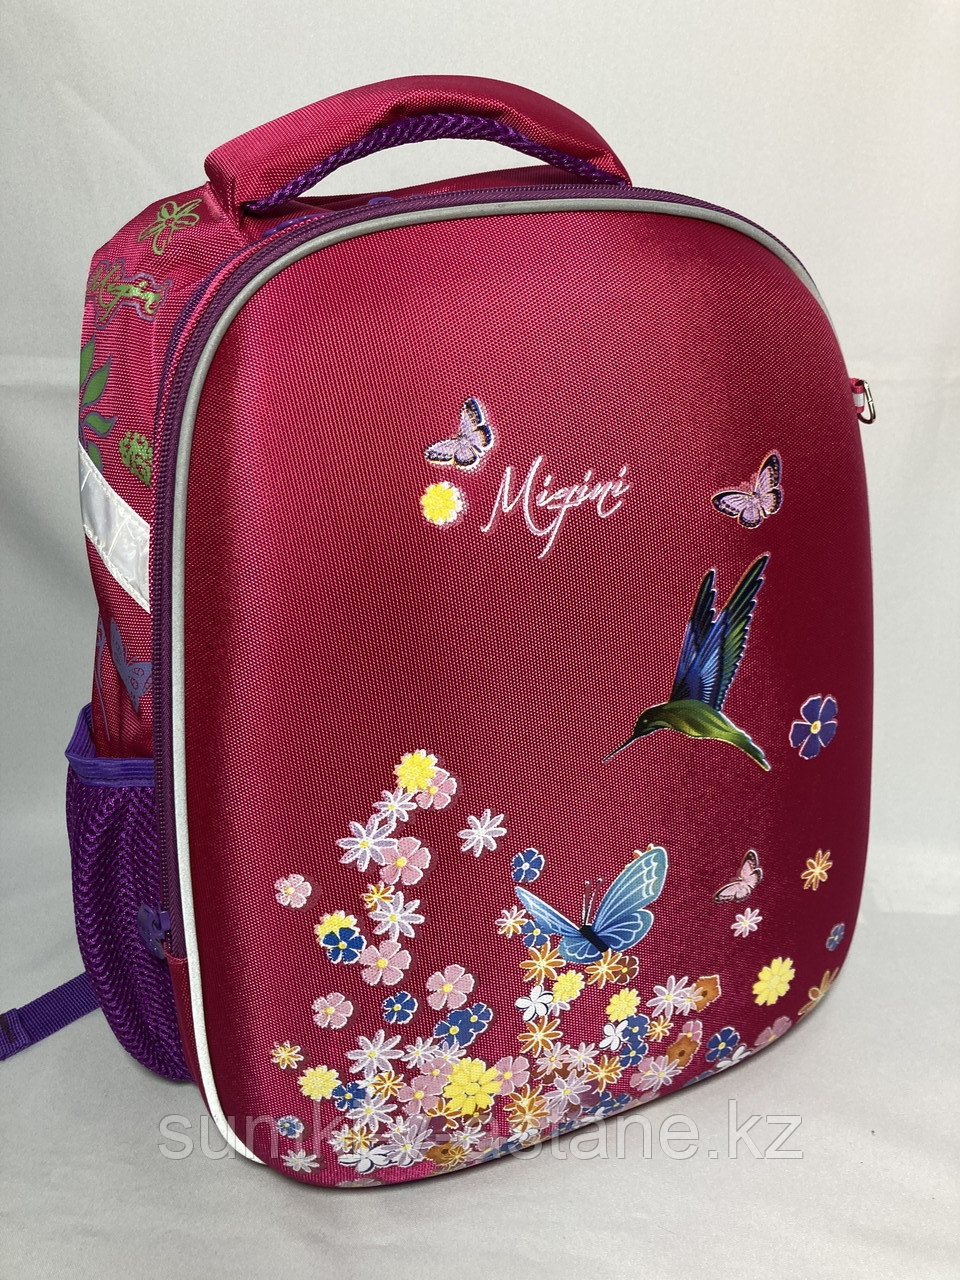 Школьный рюкзак "Migini" для девочек с 3-го по 5-й класс (высота 37 см,ширина 27 см, глубина 17 см)